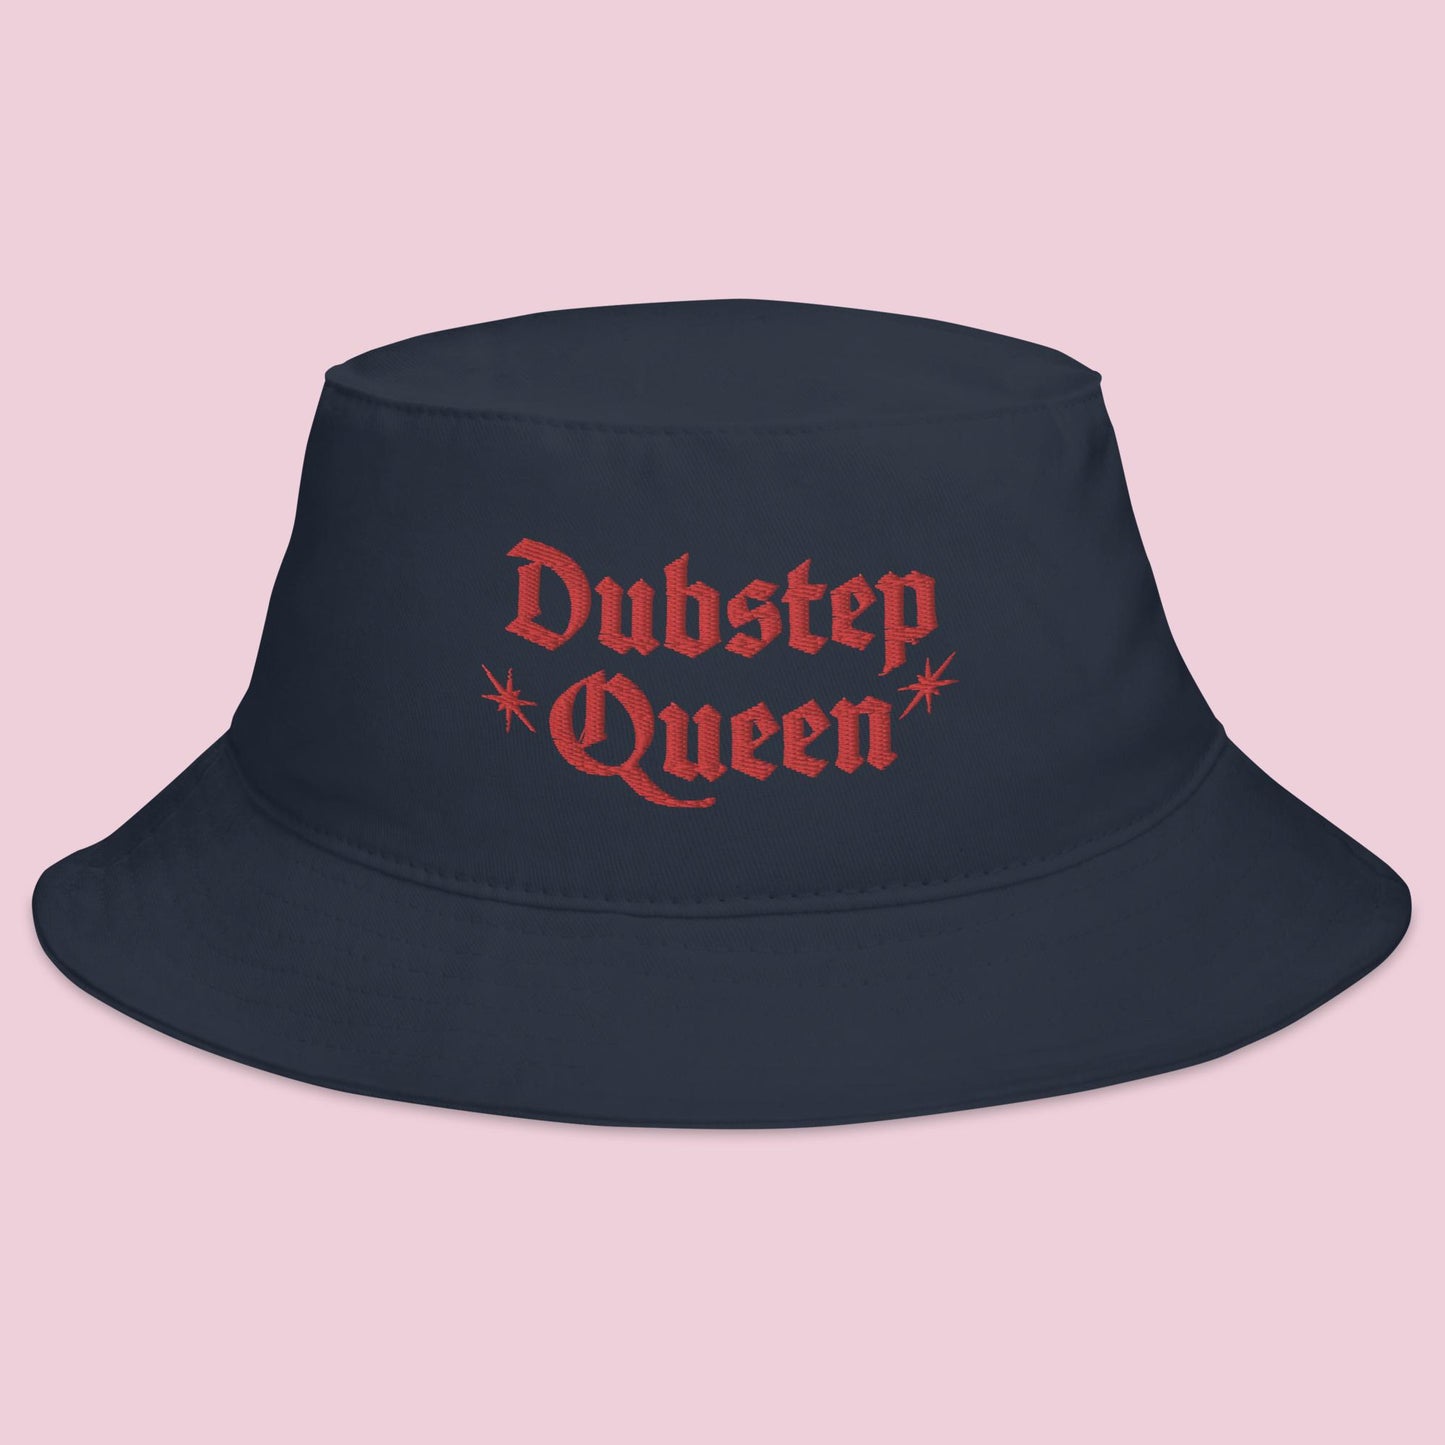 Dubstep Queen Bucket Hat